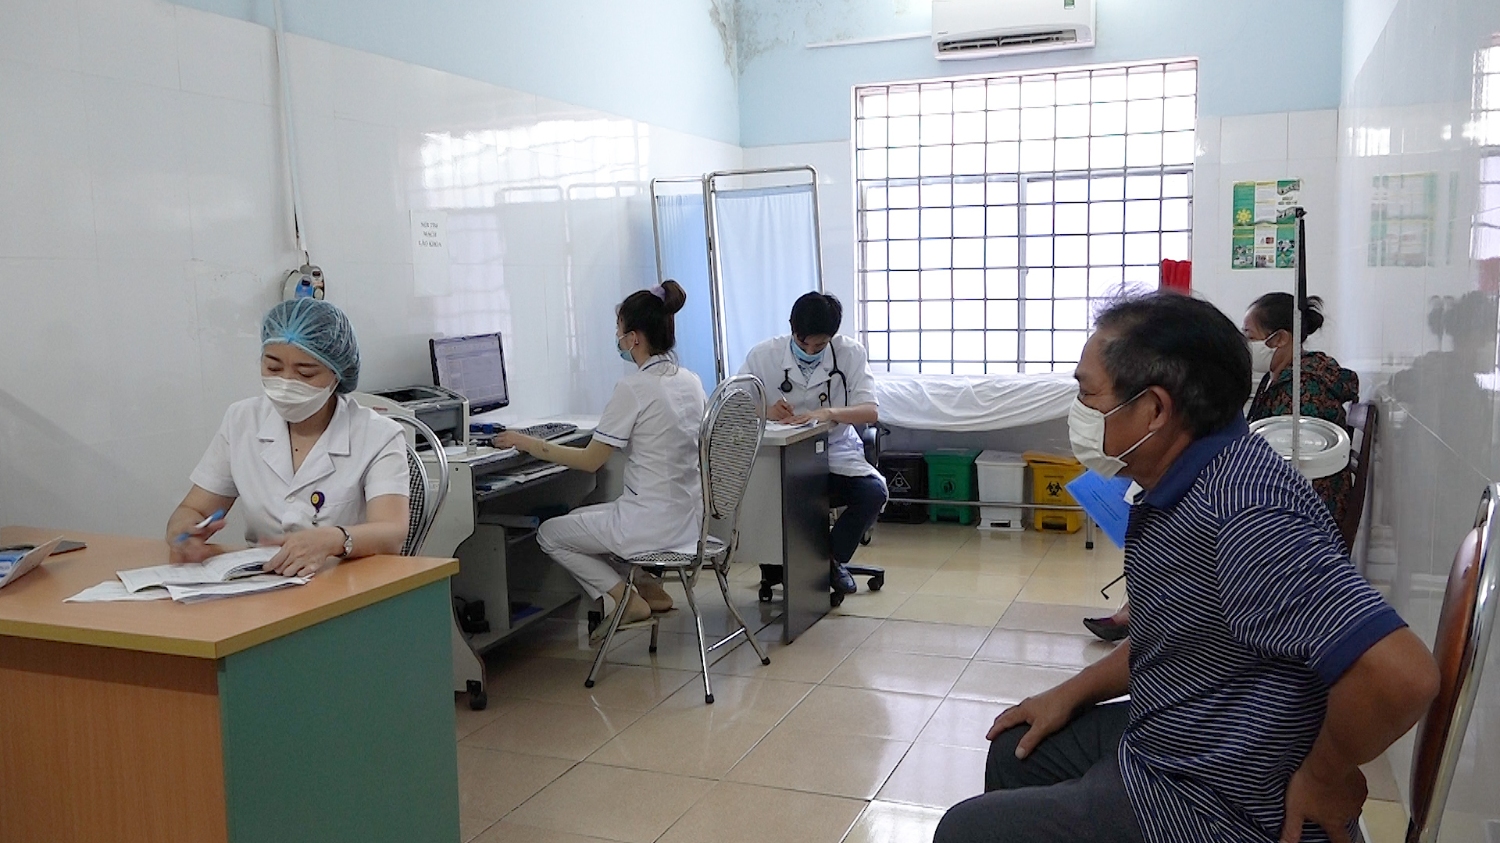 Mọi người dân đến khám và điều trị cần tuân thủ nghiêm quy định 5k của Bộ Y tế cũng như các biện pháp phòng dịch của Bệnh viện